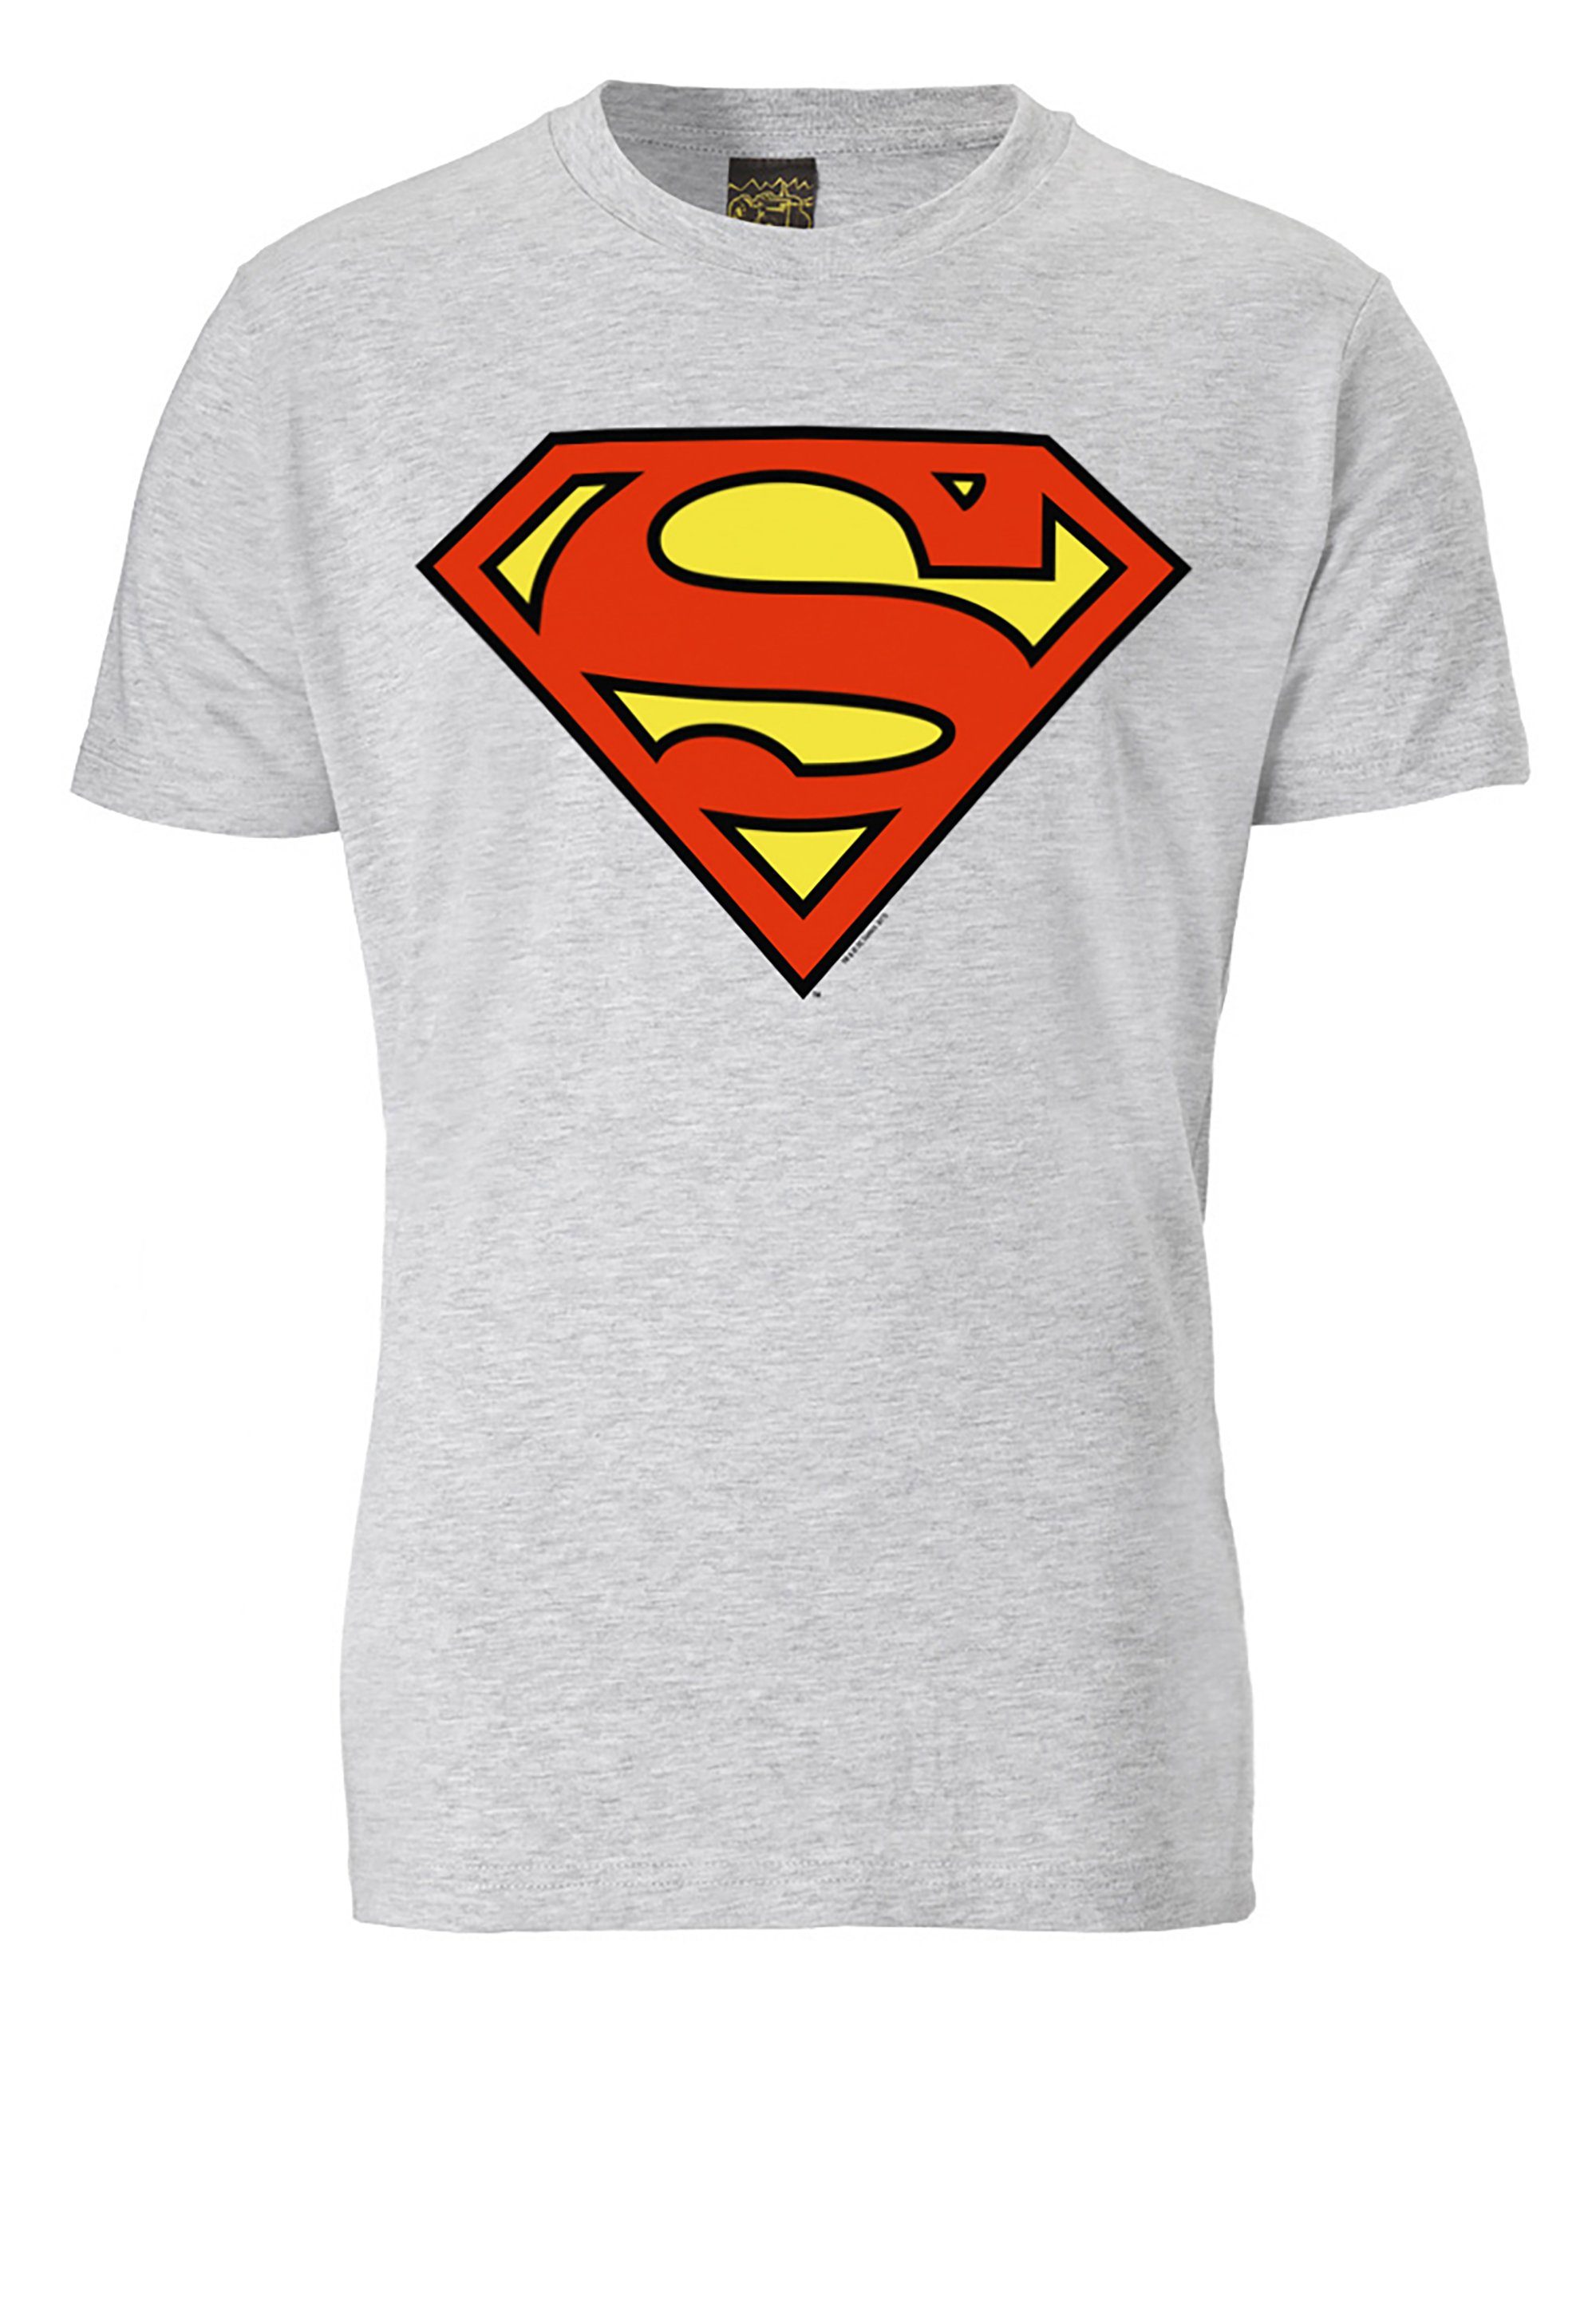 LOGOSHIRT T-Shirt Superman trendigem Superhelden-Print grau-meliert Logo mit